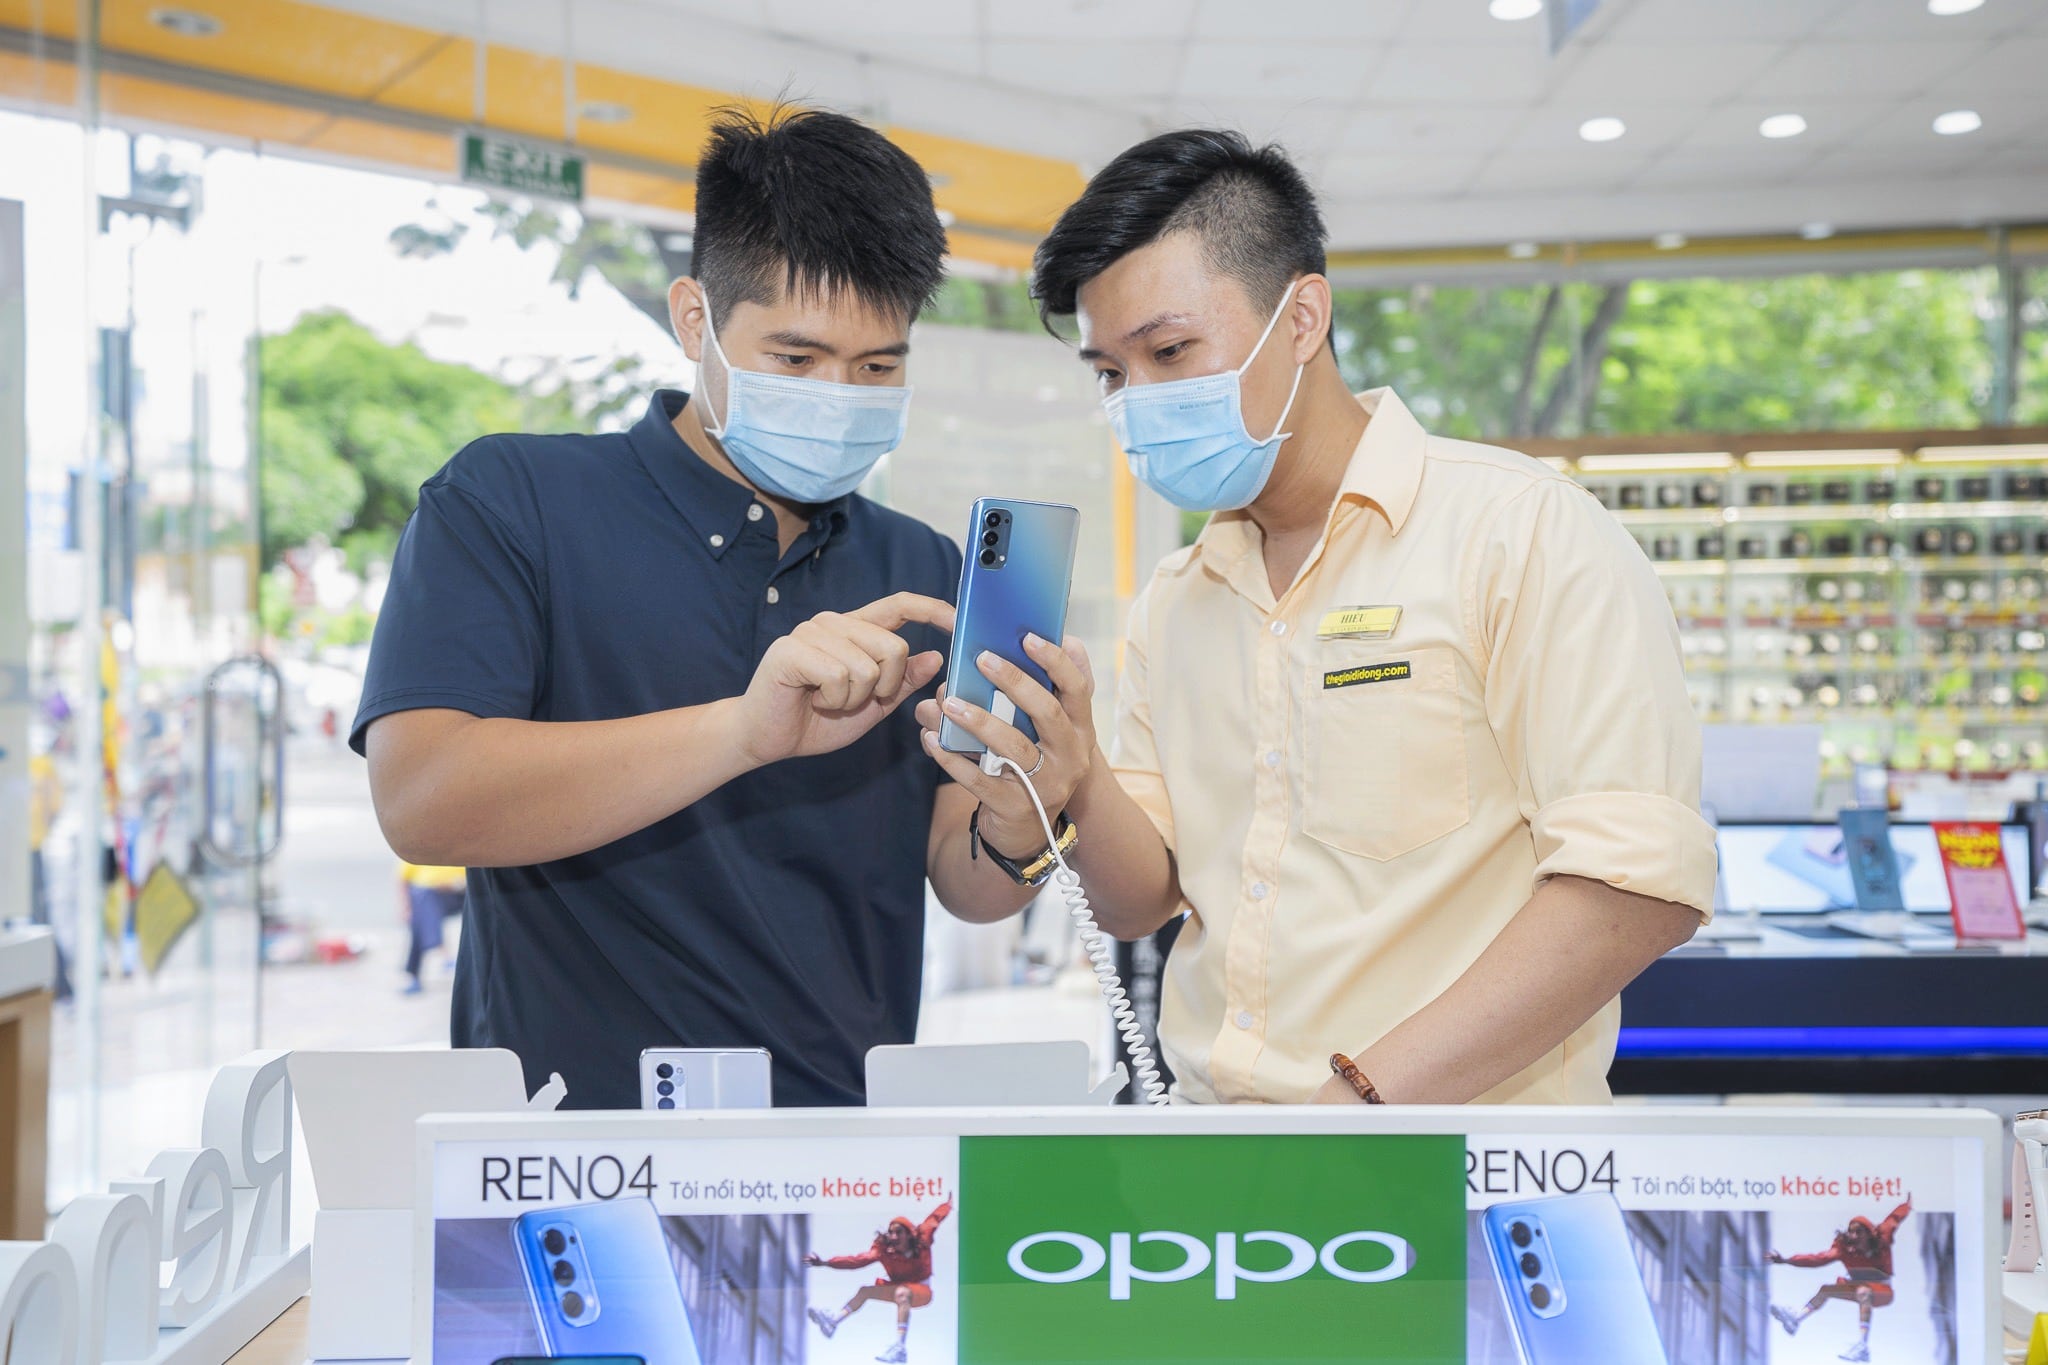 Mở bán OPPO Reno4 Series: Đạt hơn 23,000 đơn đặt cọc chỉ trong 6 ngày, trở thành smartphone được đặt mua nhanh nhất Việt Nam 2020